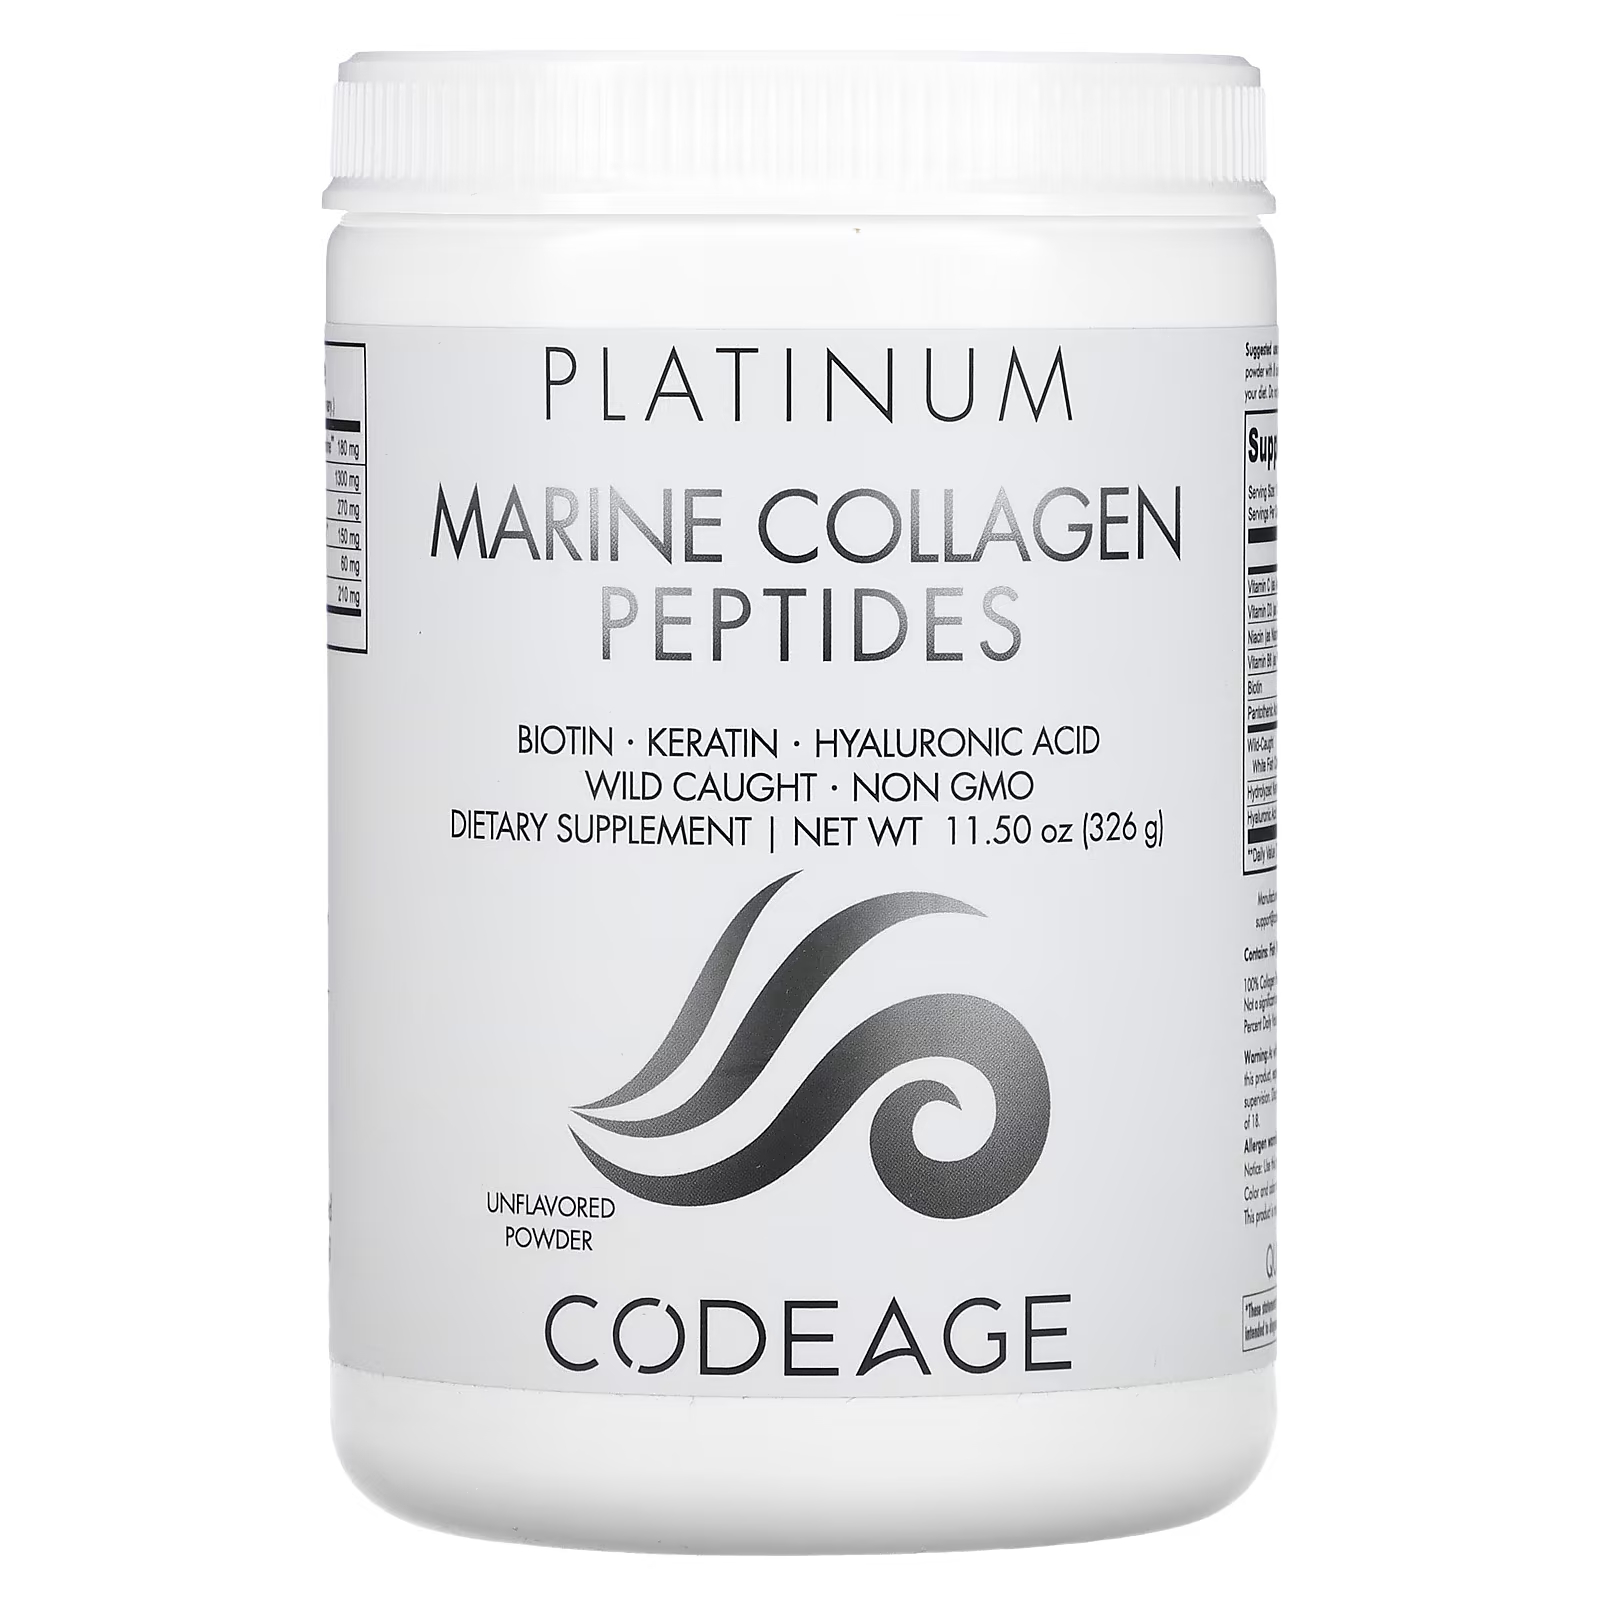 Пищевая добавка Codeage Platinum пептиды морского коллагена без вкуса, 326г пищевая добавка sunwarrior белковые пептиды для построения коллагена таитянская ваниль 500г